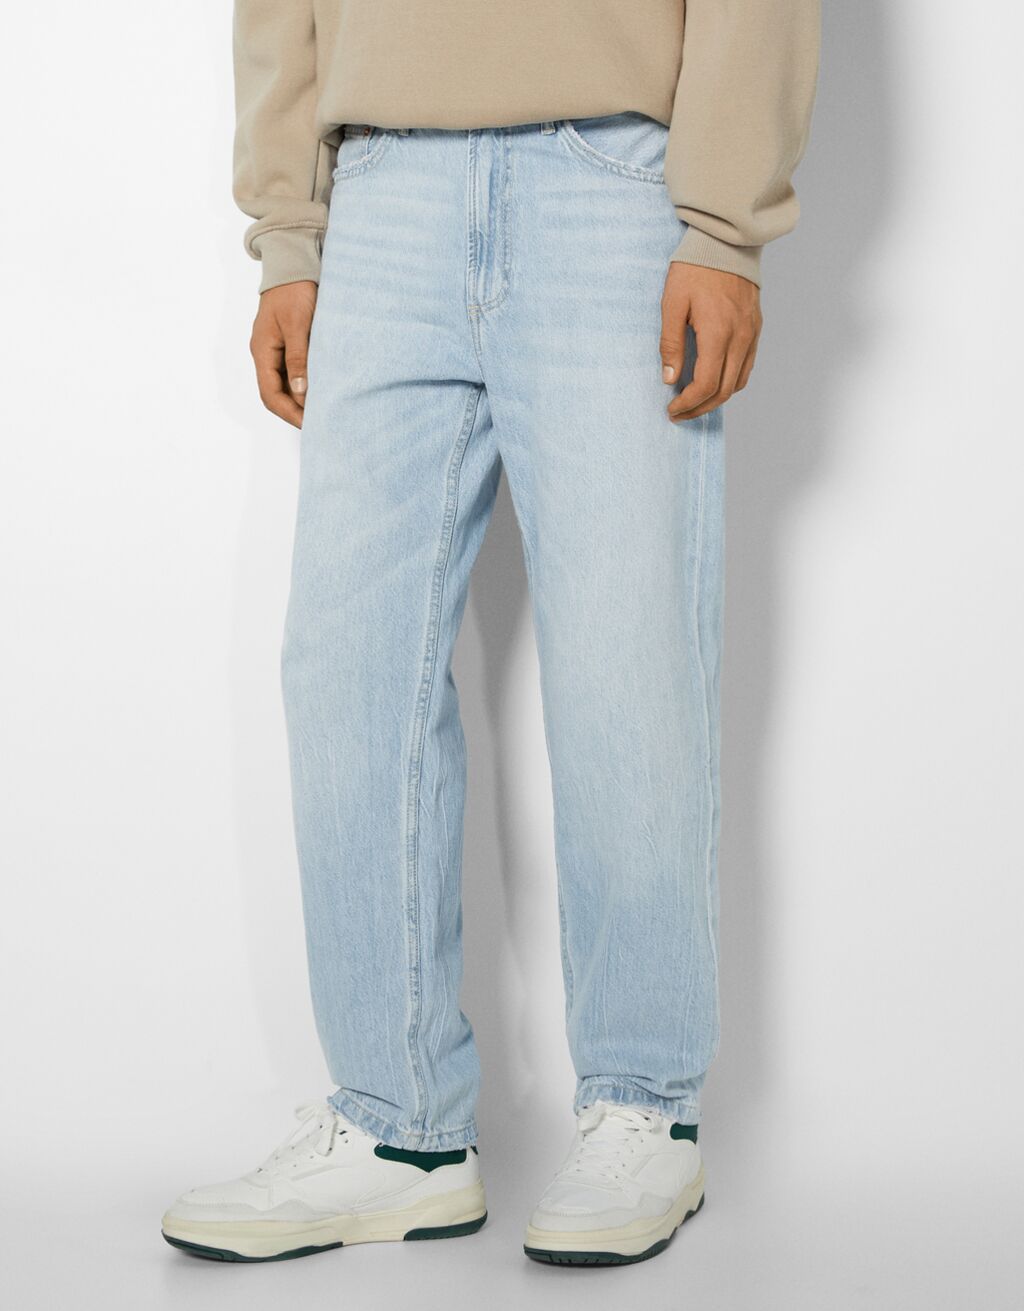 90's jeans met wijde pijpen